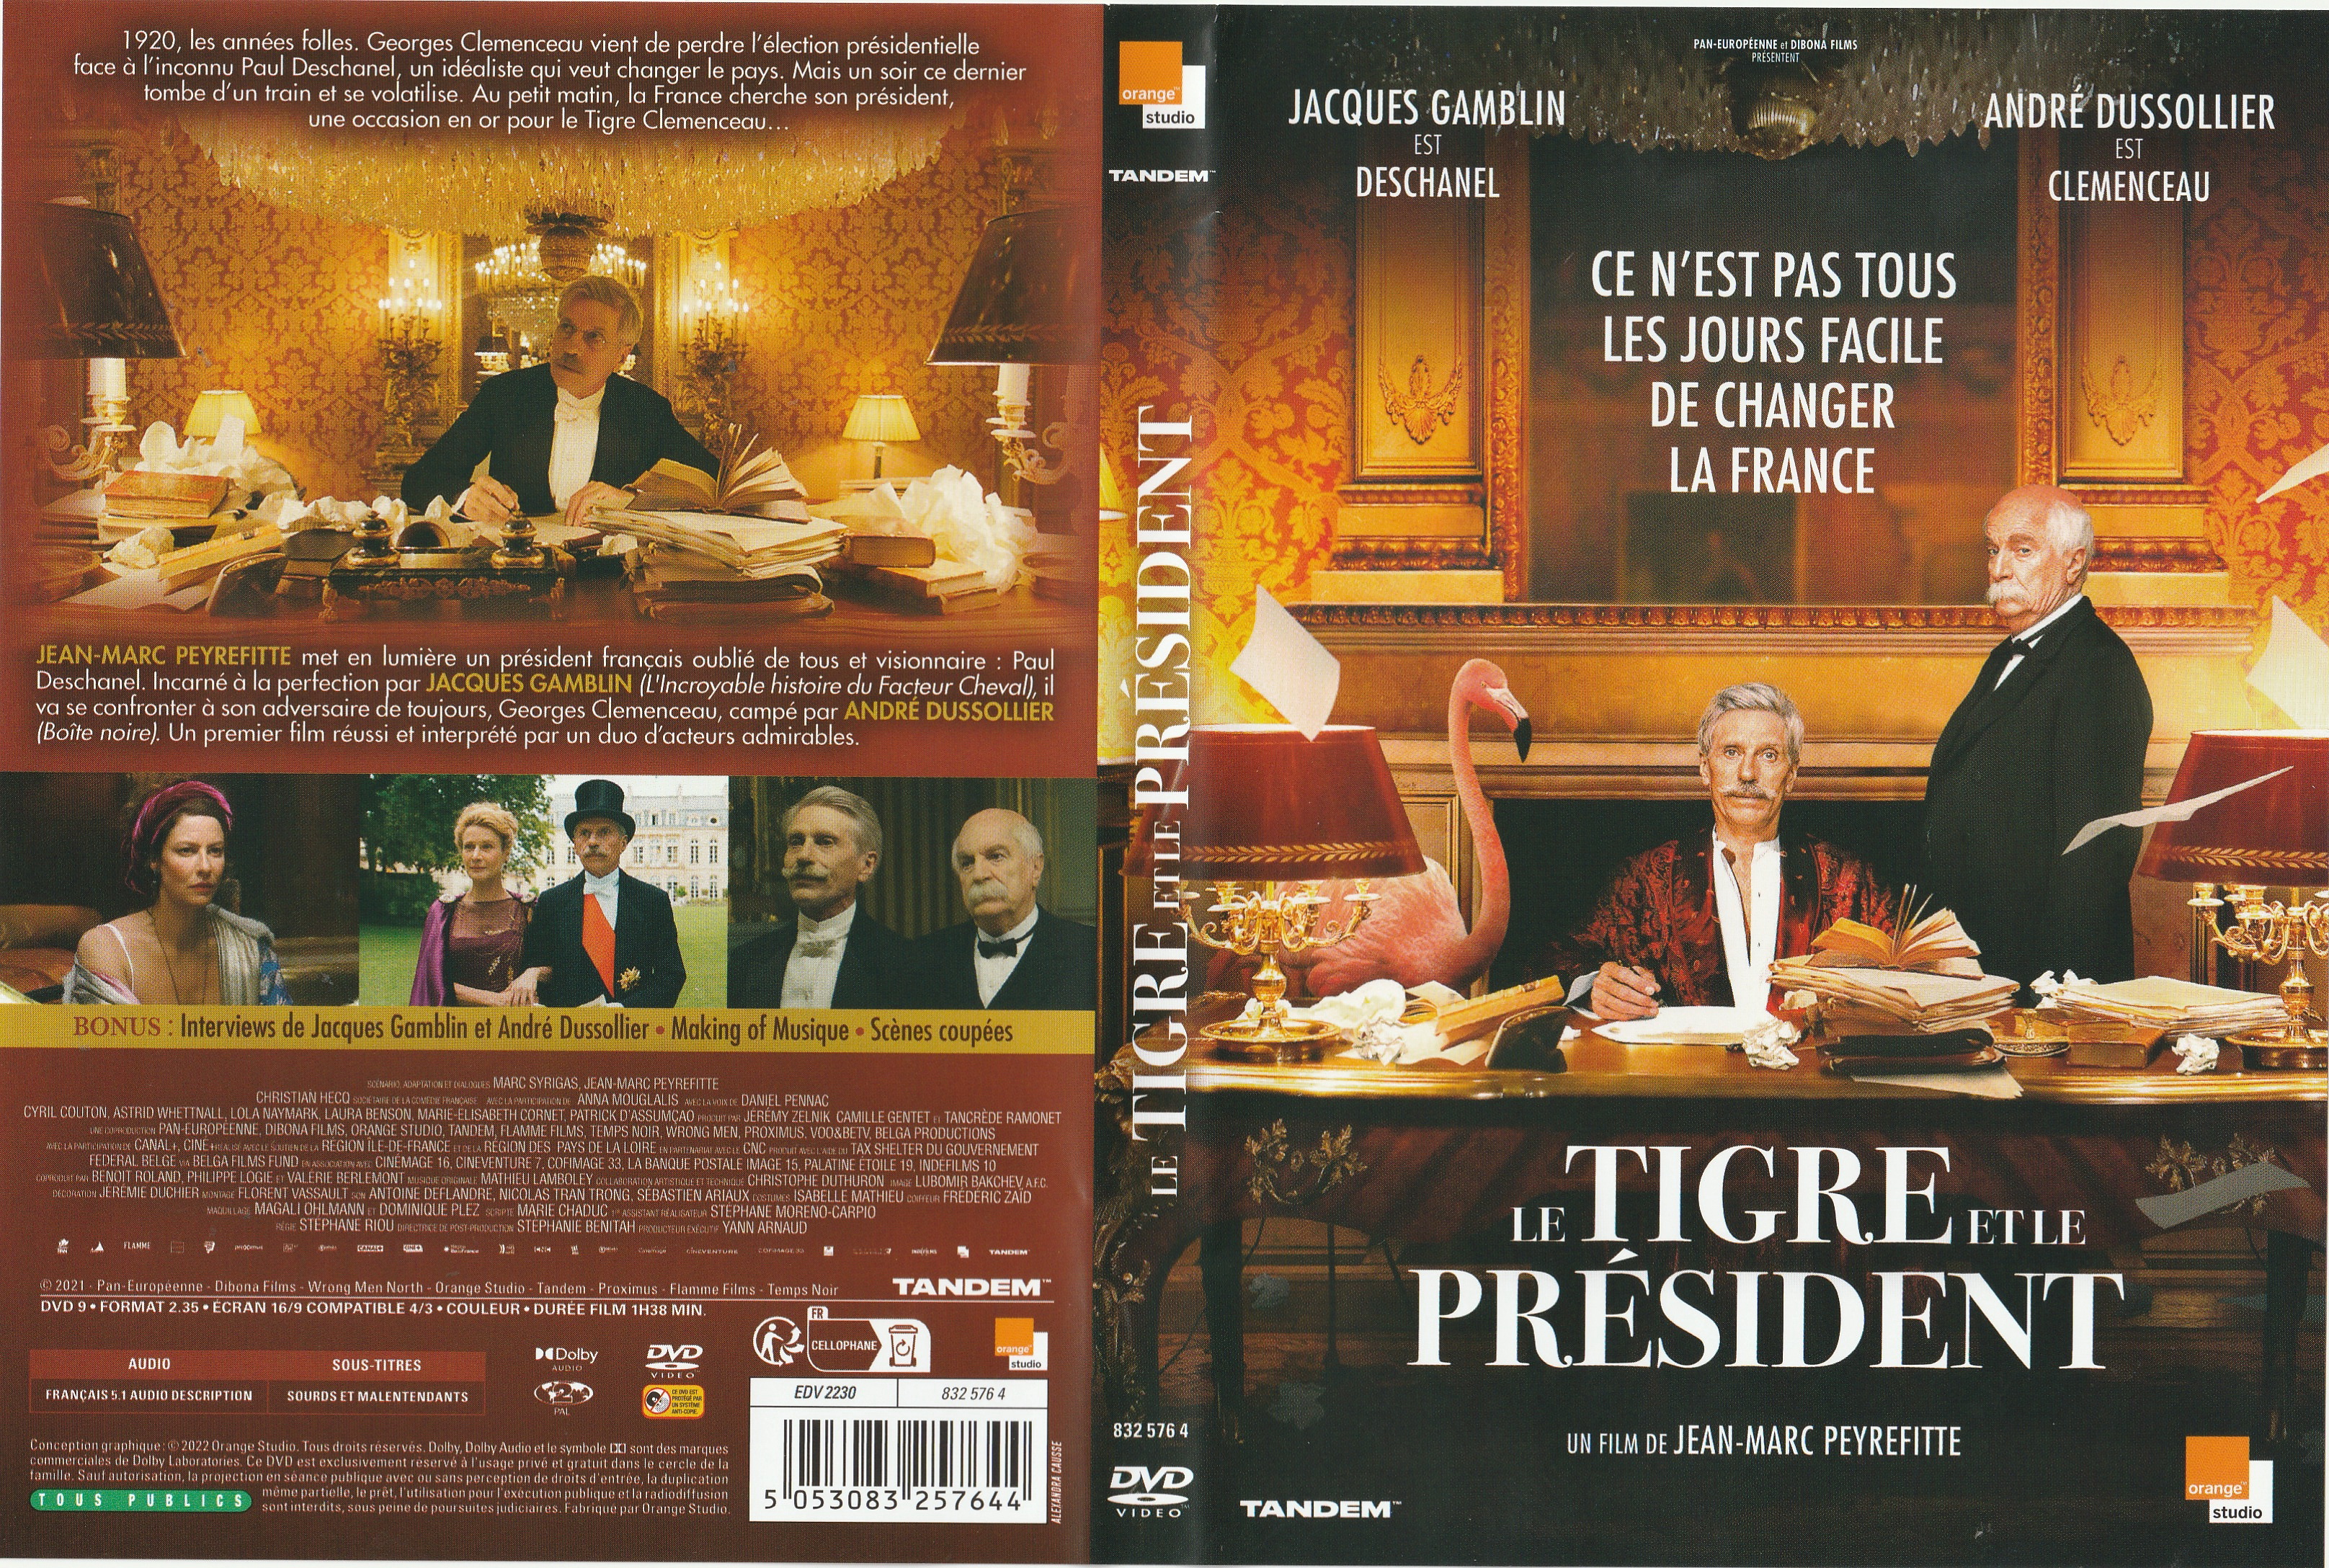 Jaquette DVD Le Tigre et le President